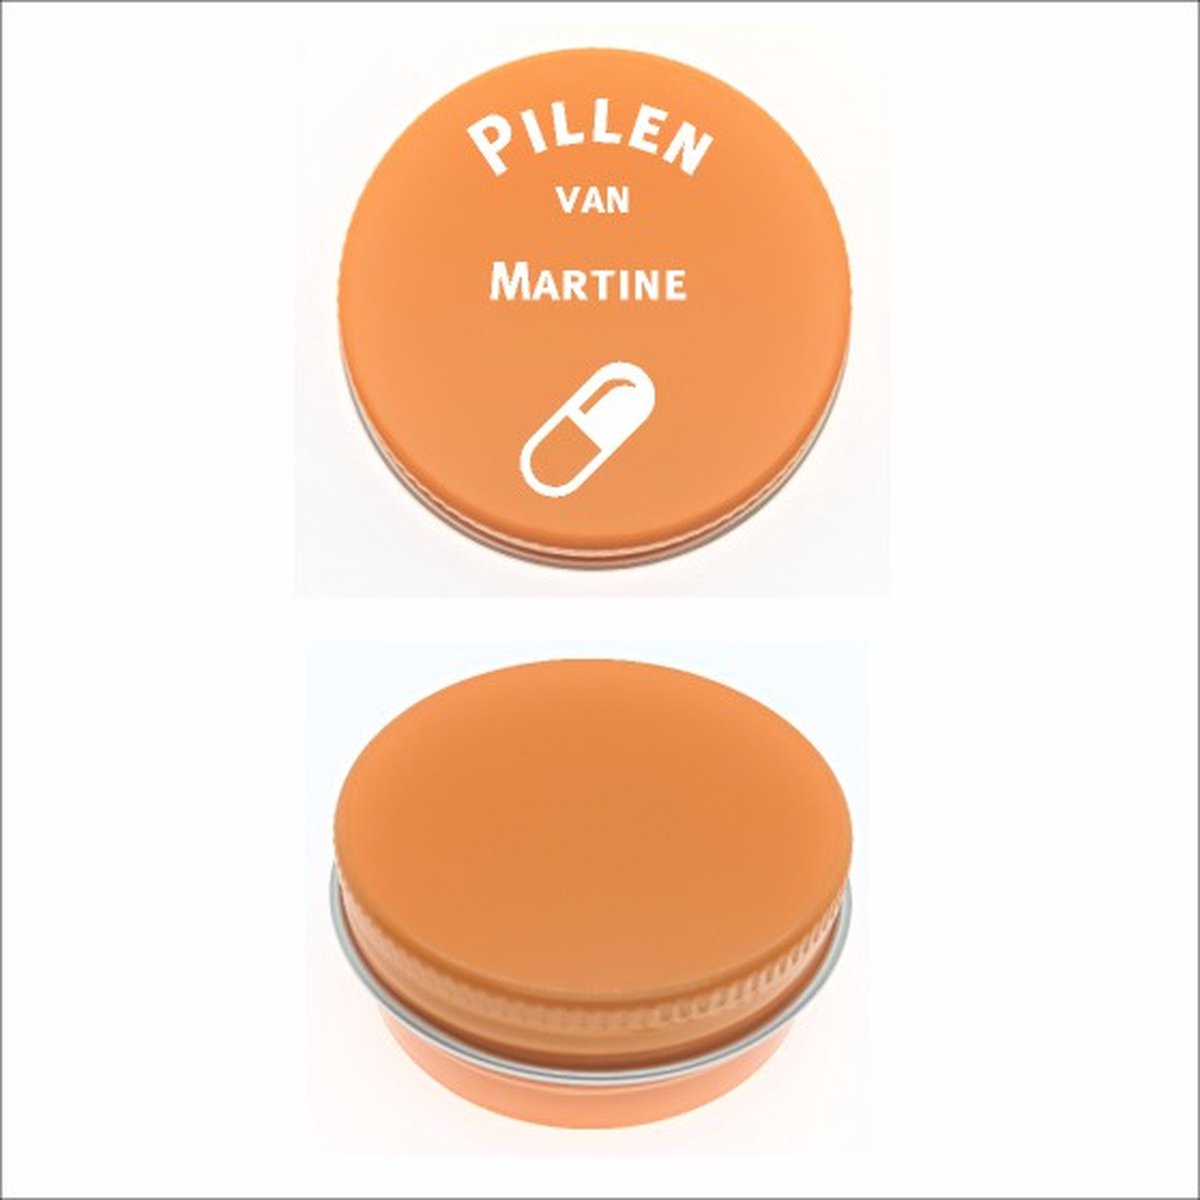 Pillen Blikje Met Naam Gravering - Martine